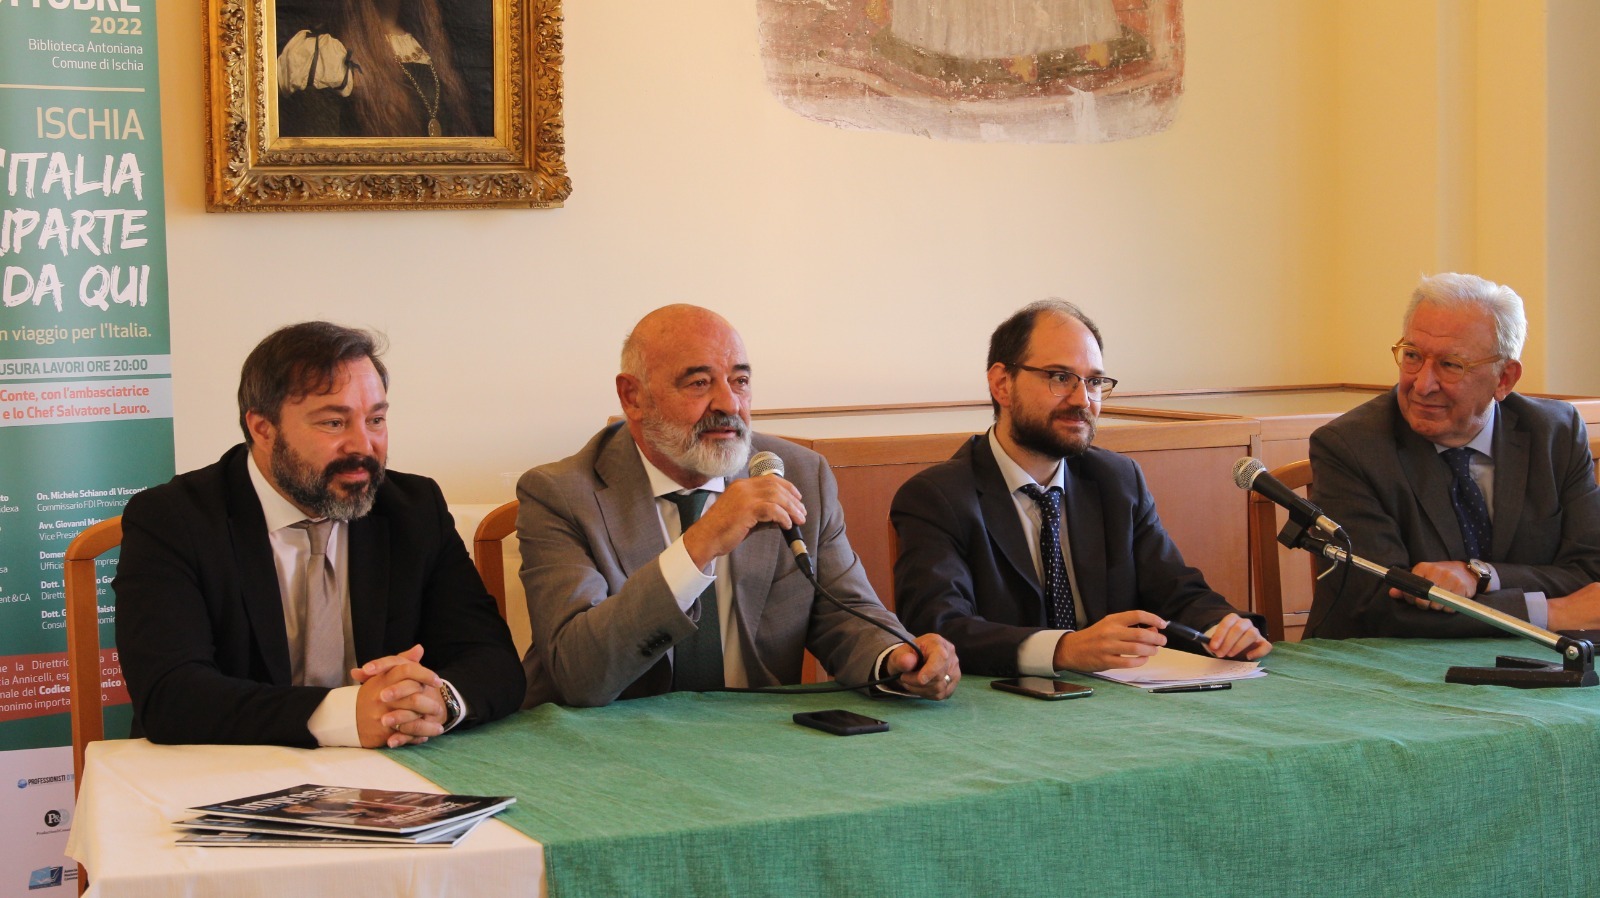 Esperti economici, broker, imprenditori, uomini di cultura e organizzazioni d’impresa si incontrano ad Ischia per la ripartenza economica dell’Italia